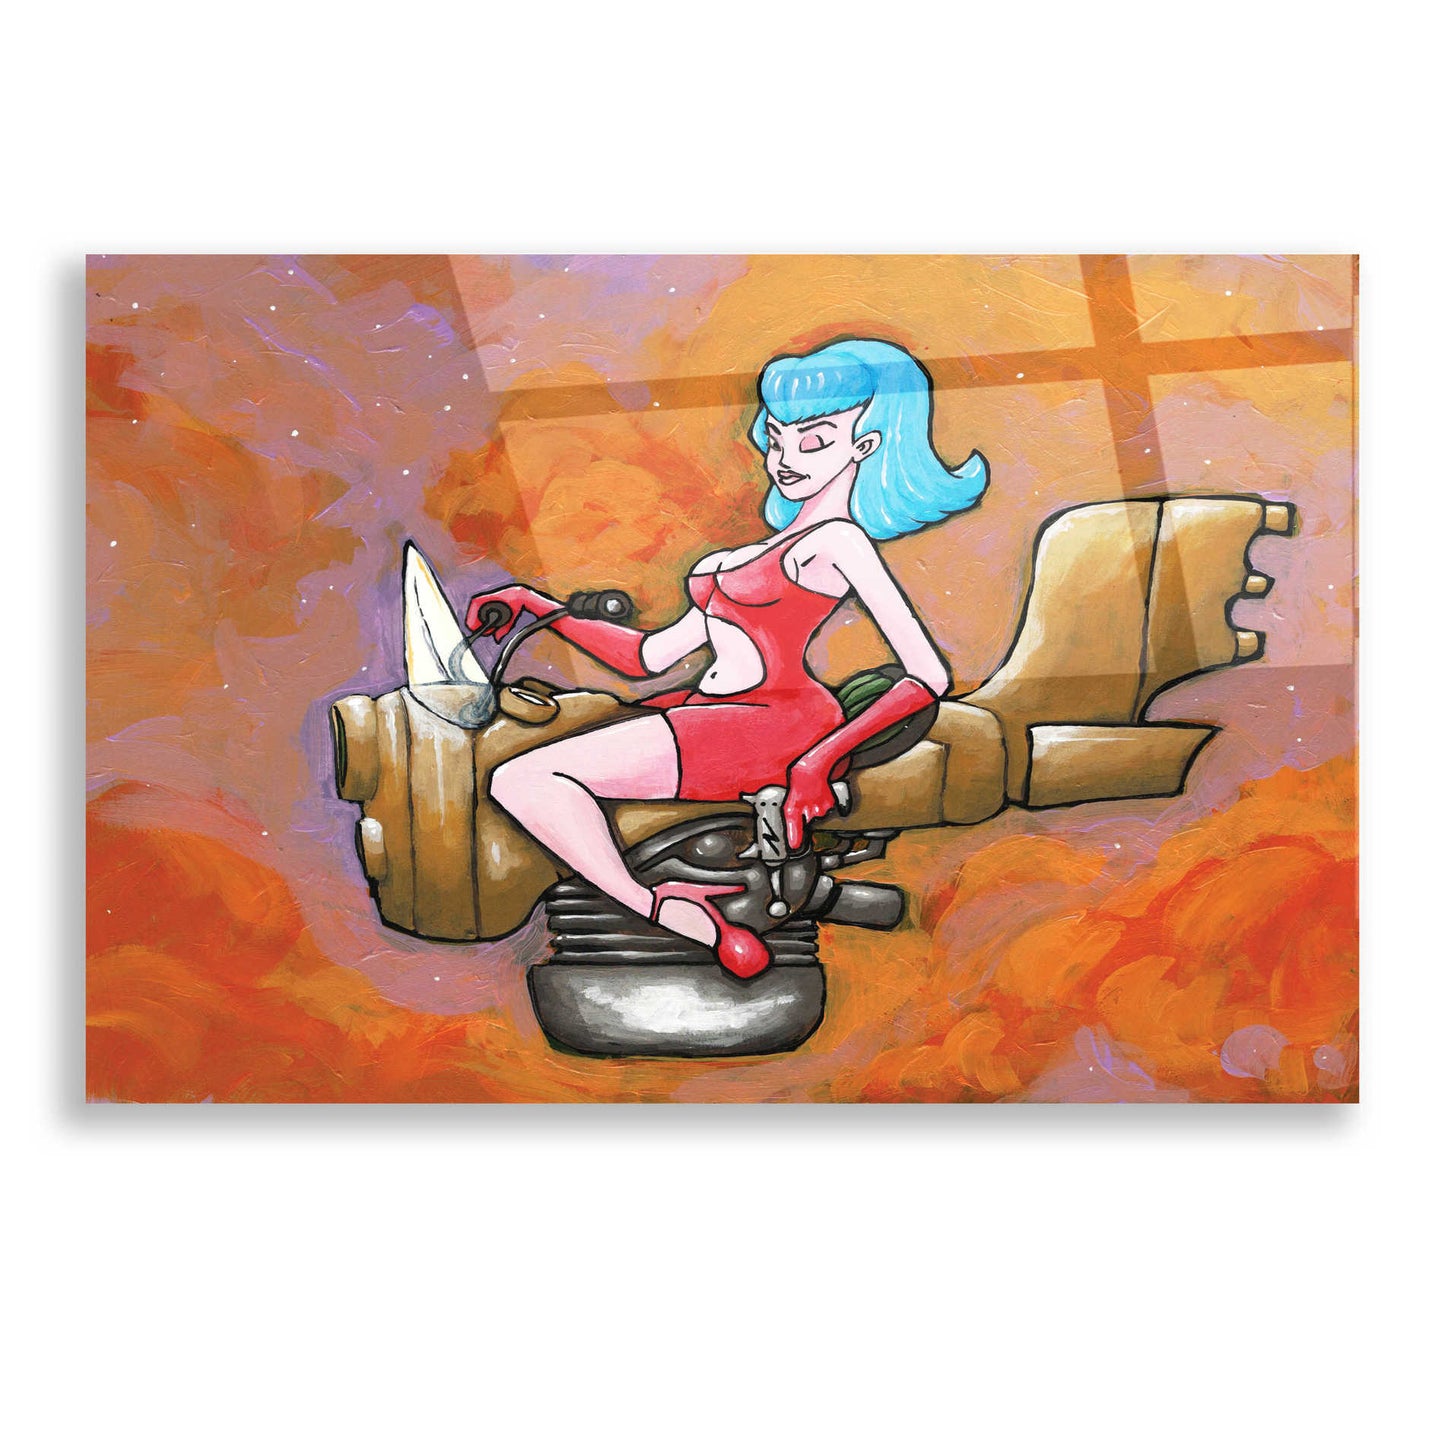 Epic Art 'Rocket Queen Paint' by Craig Snodgrass, Acrylic Glass Wall Art,16x12